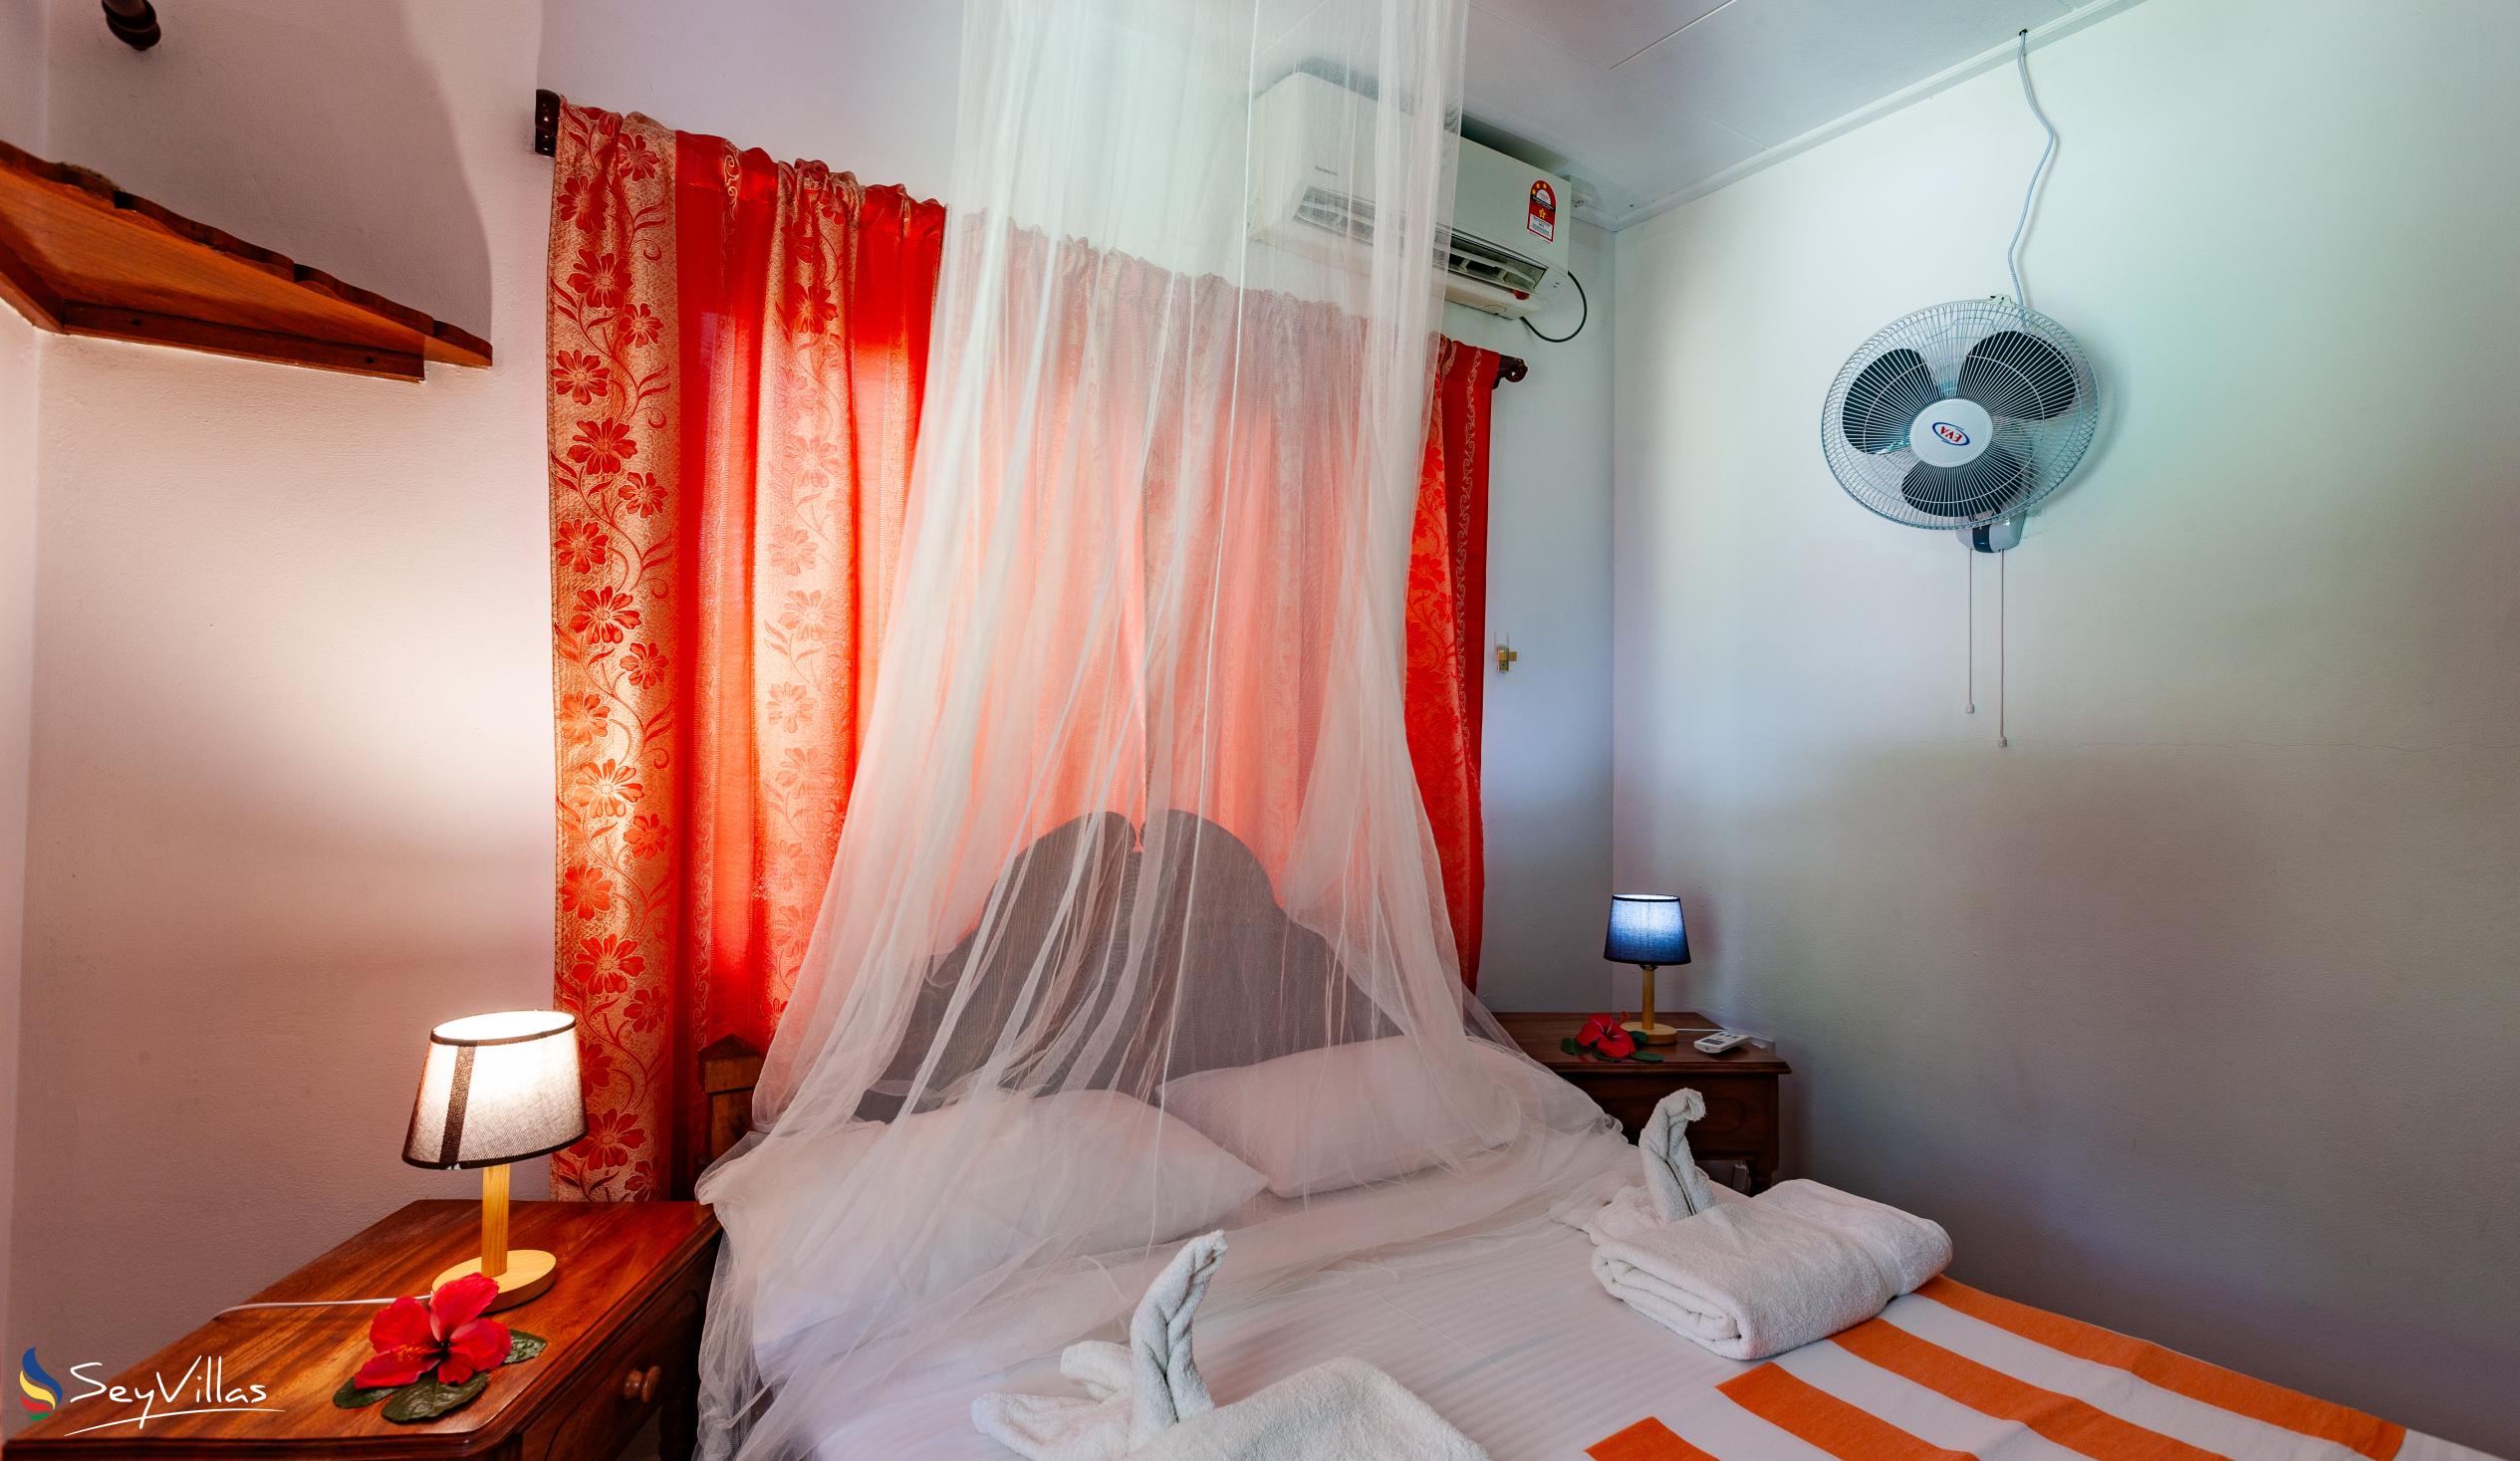 Foto 44: Dan Kazou - Appartamento con 2 camere - La Digue (Seychelles)